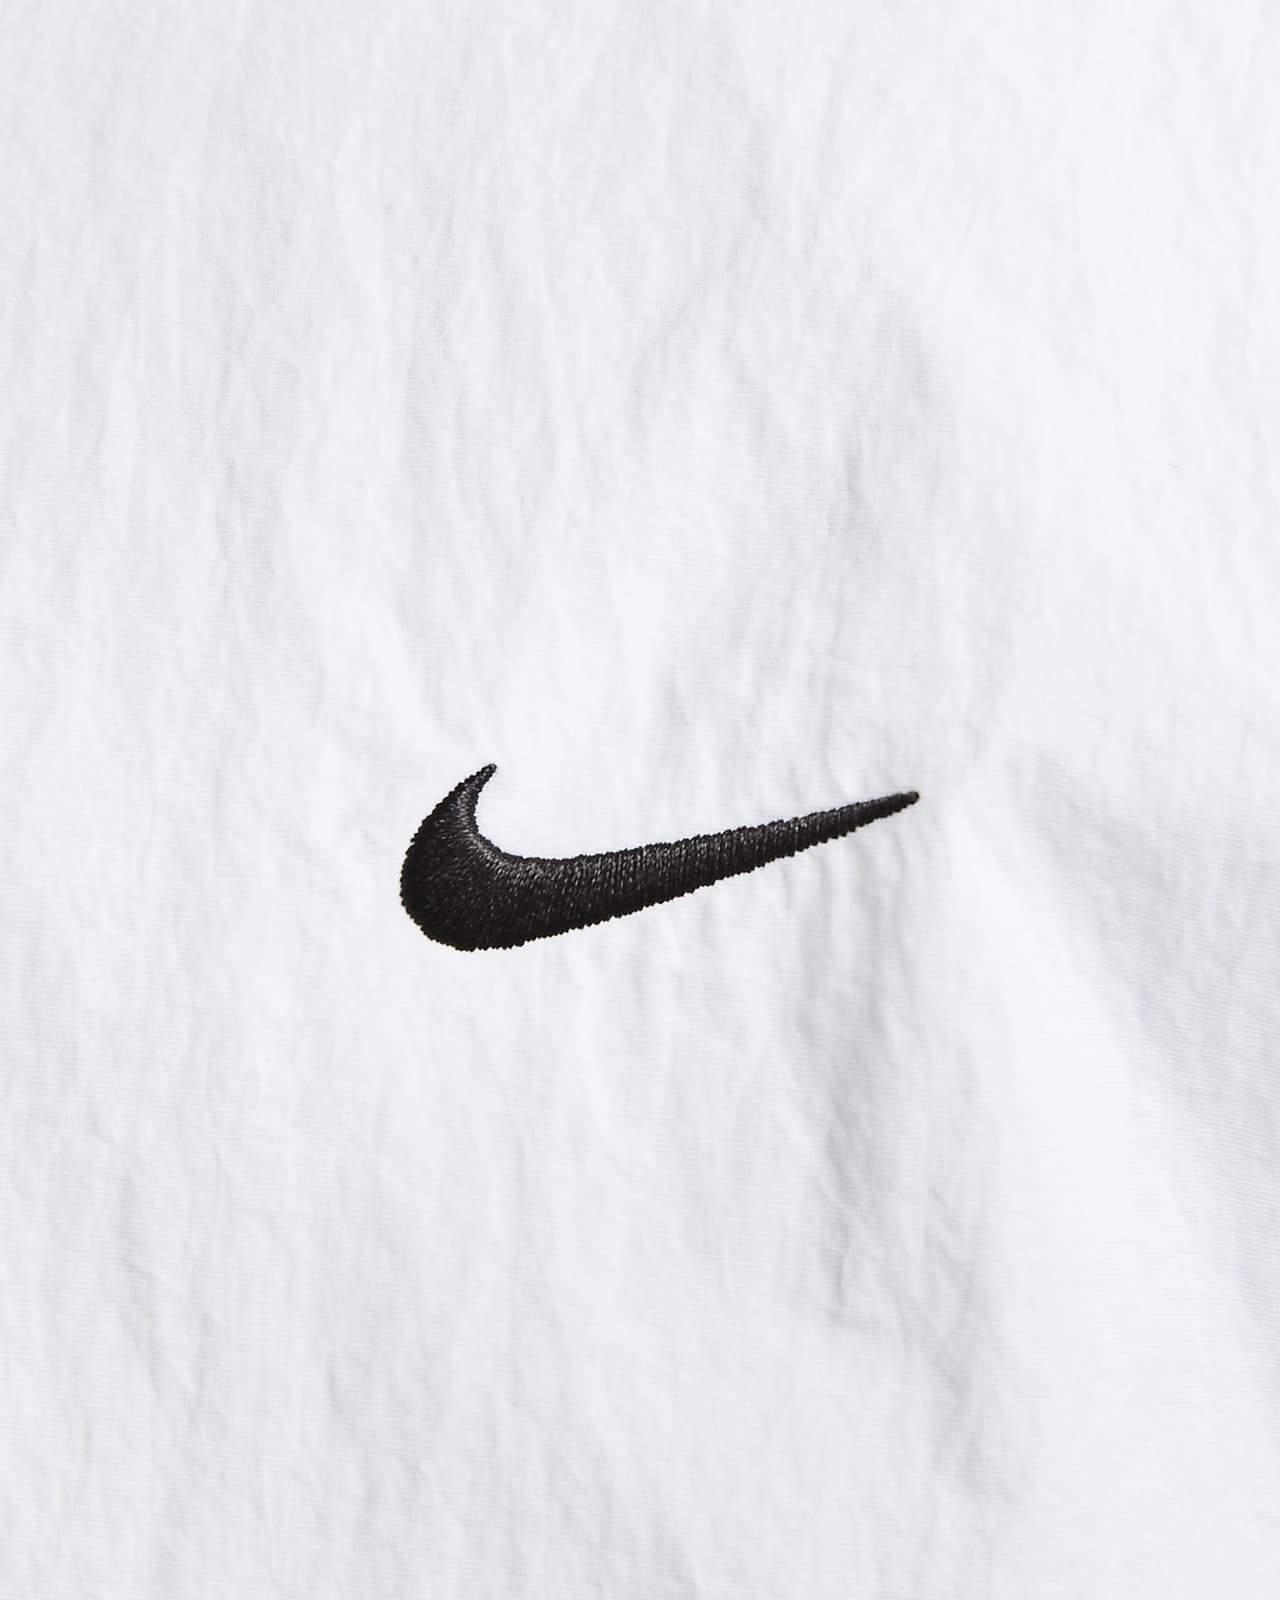 Veste de survêtement Nike Sportswear Solo Swoosh pour Homme